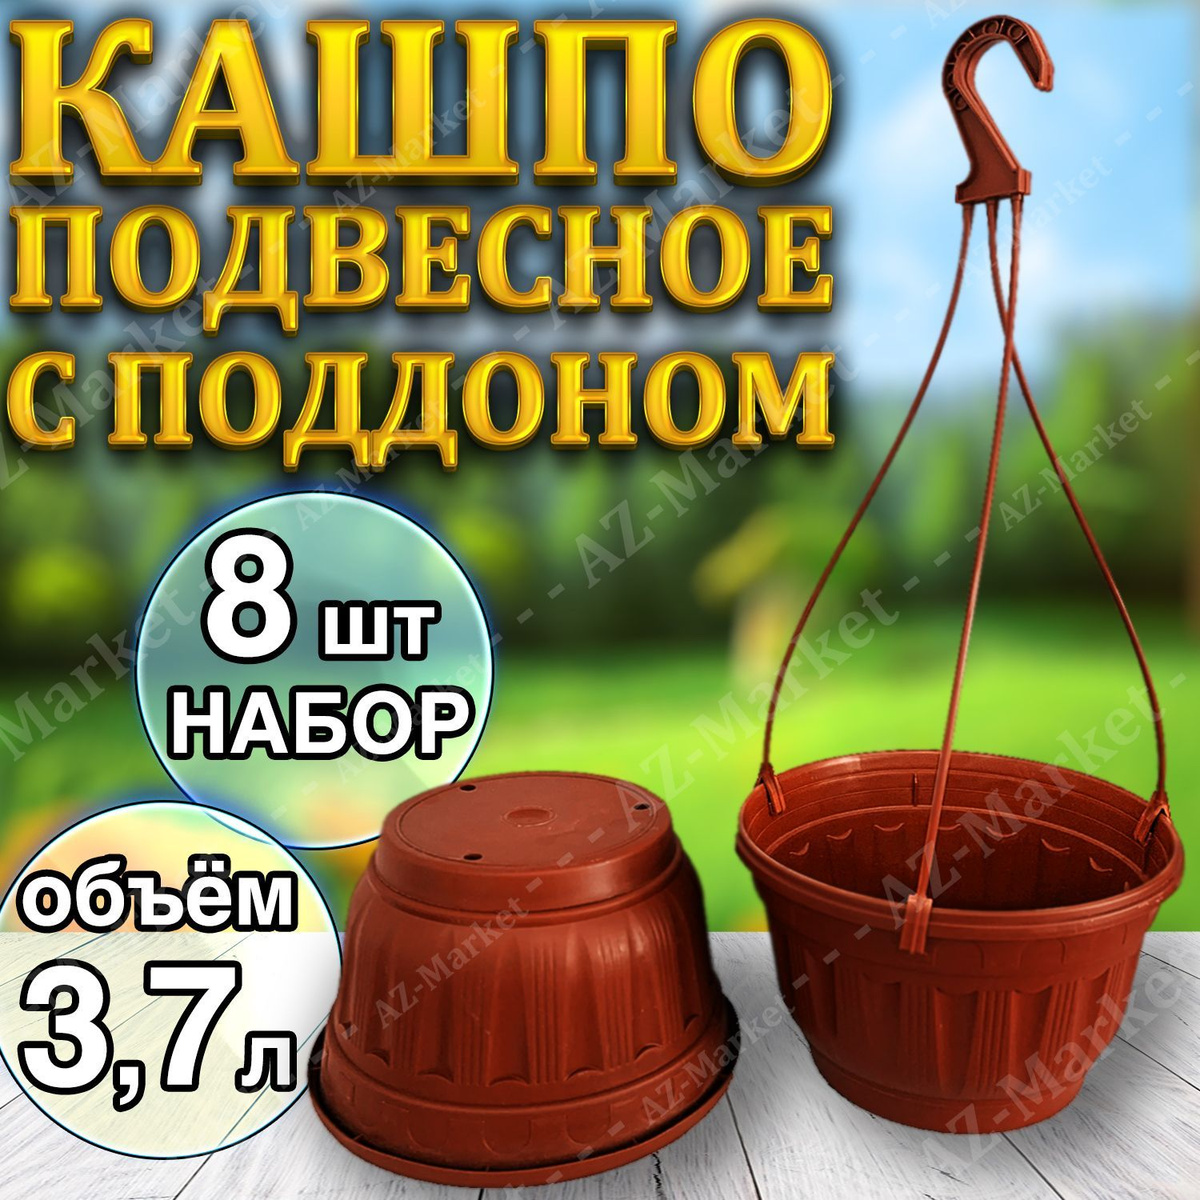 Кашпо подвесное с поддоном 3,7л уличное для цветов и растений, садовый набор 8шт Терракотовый (коричневый)